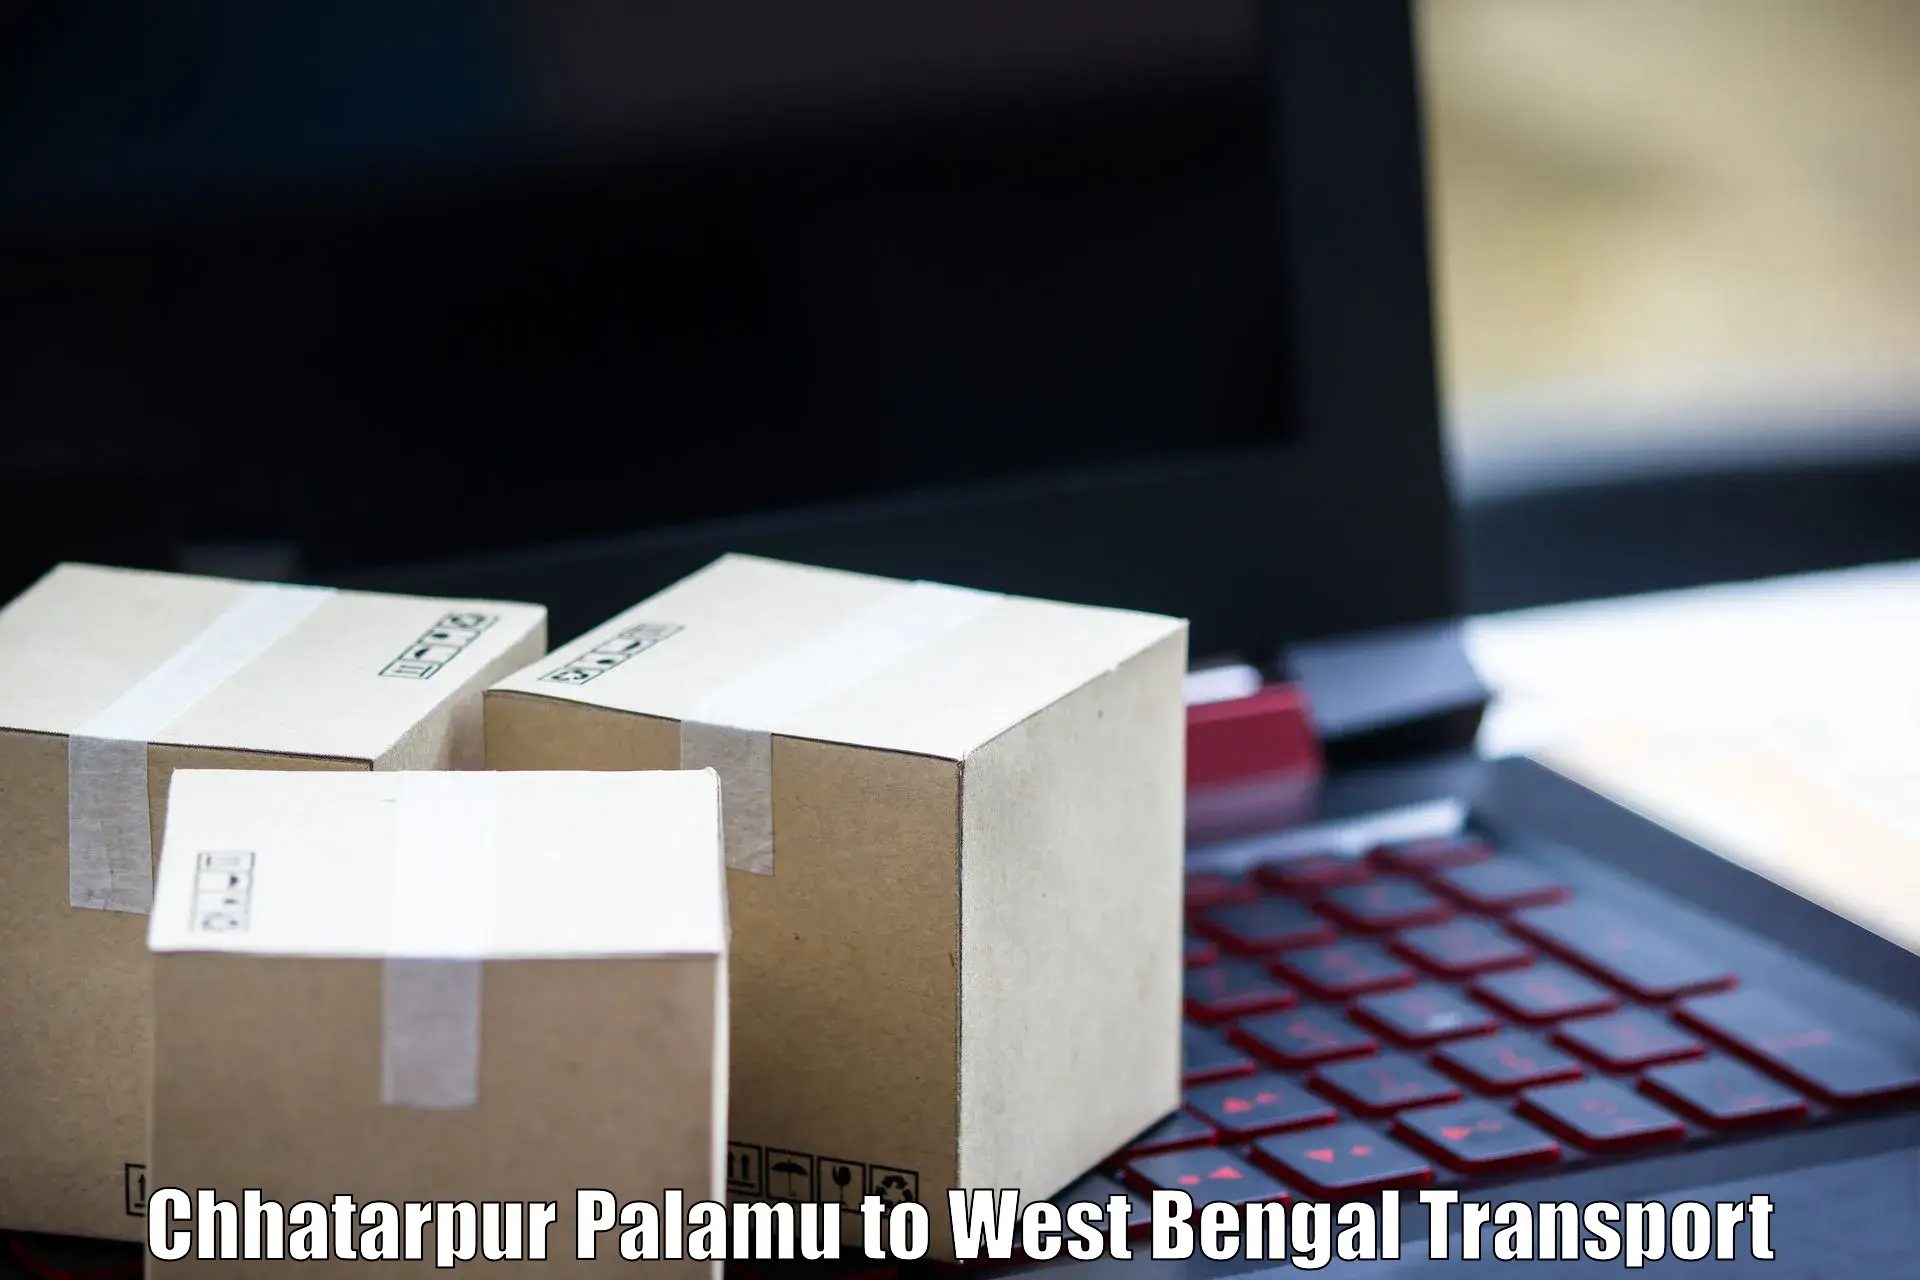 Vehicle parcel service Chhatarpur Palamu to Kalyani University